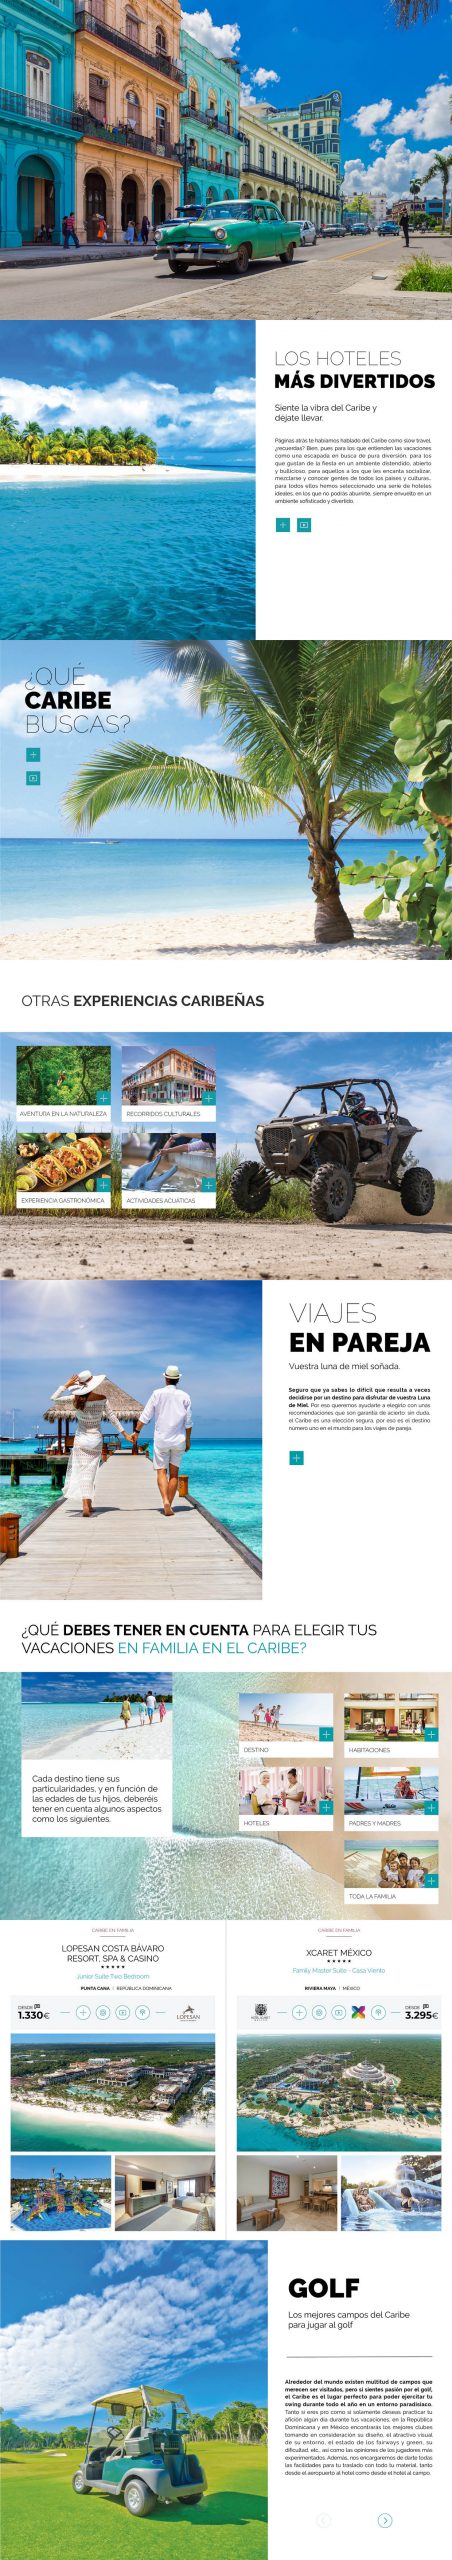 Publicaciones Interactivas. Travelplan Caribe